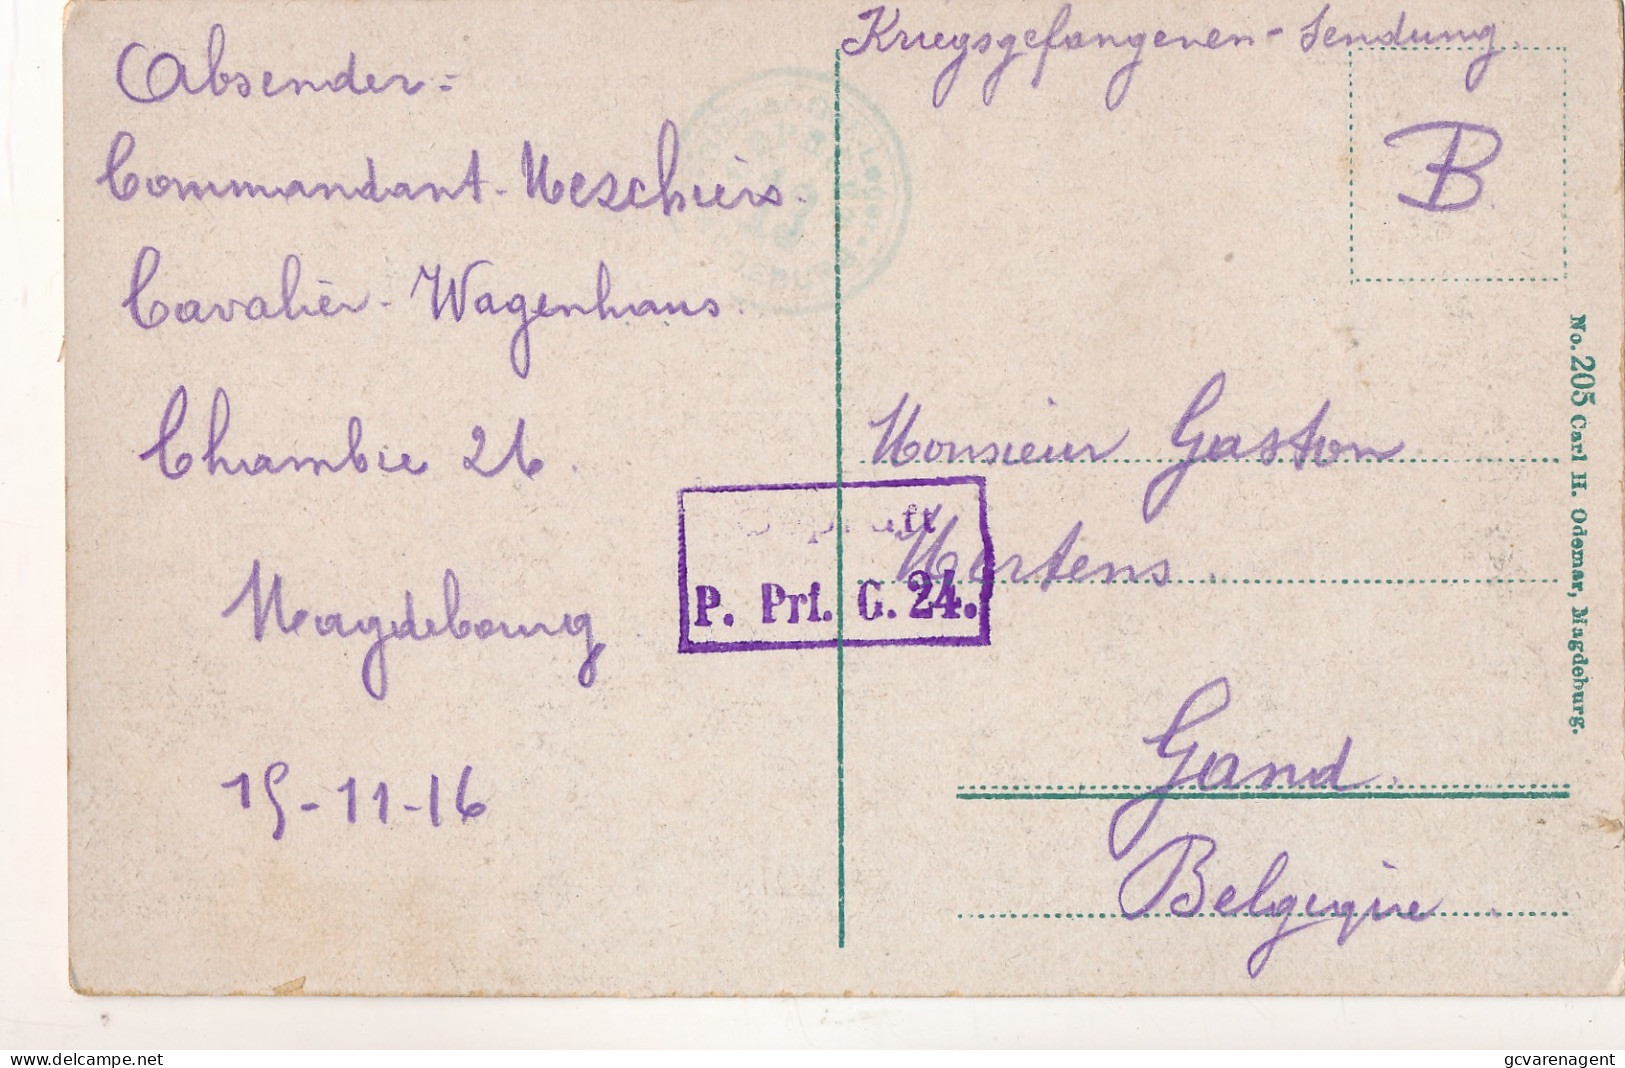 1916  COMMADANT UESCHIERS CAVALIER WAGENHAUS CHAMBRE 26 MAGDEBOURG TO GAND BELGIUM      2  SCANS - Krijgsgevangenen